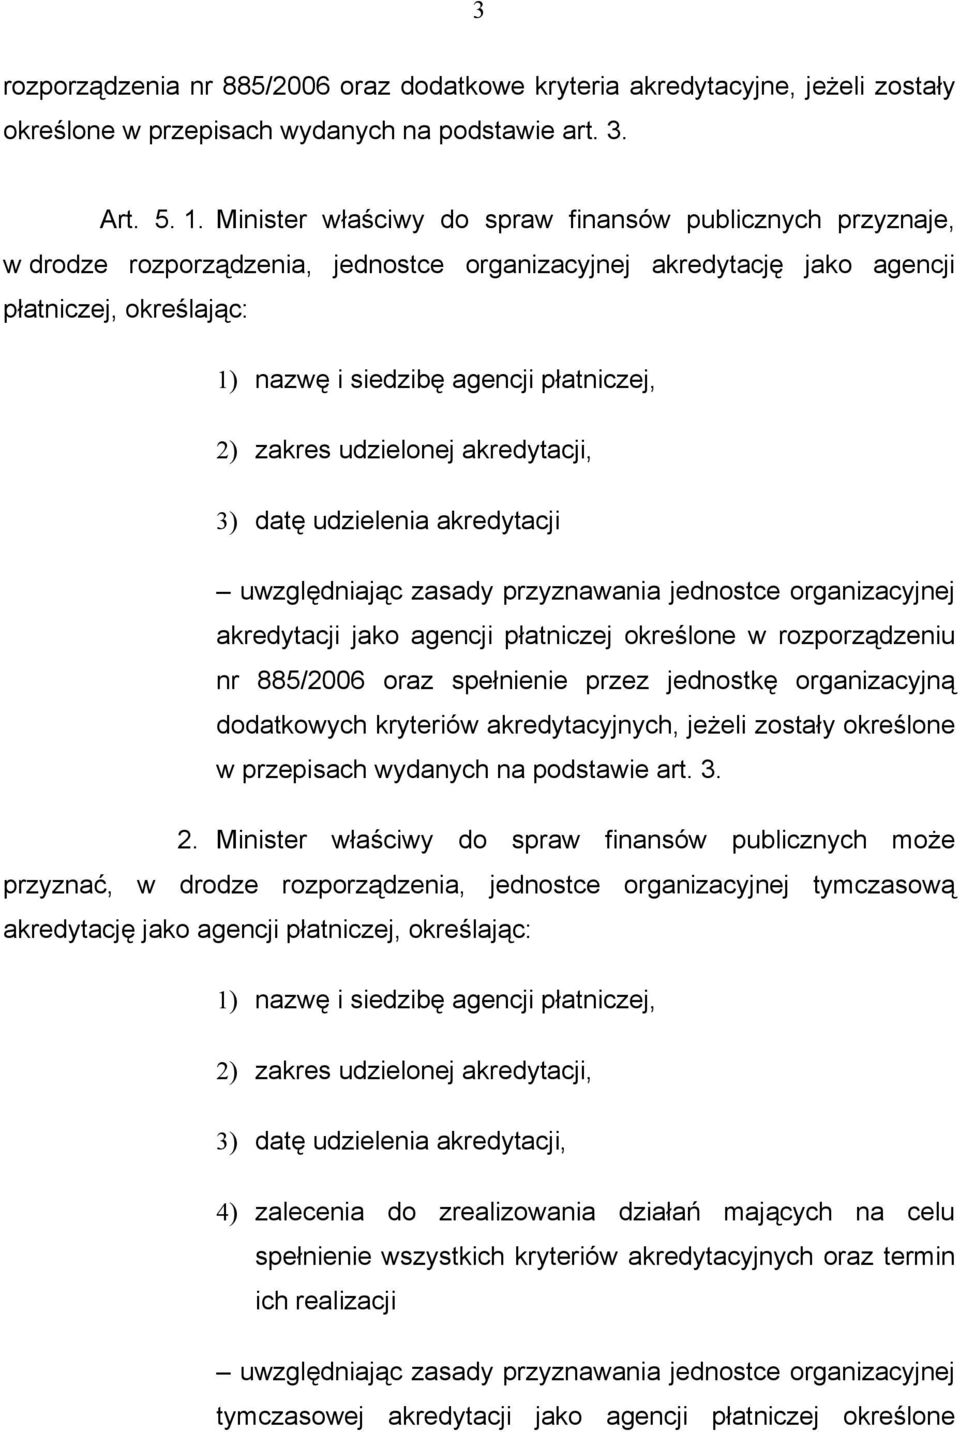 2) zakres udzielonej akredytacji, 3) datę udzielenia akredytacji uwzględniając zasady przyznawania jednostce organizacyjnej akredytacji jako agencji płatniczej określone w rozporządzeniu nr 885/2006